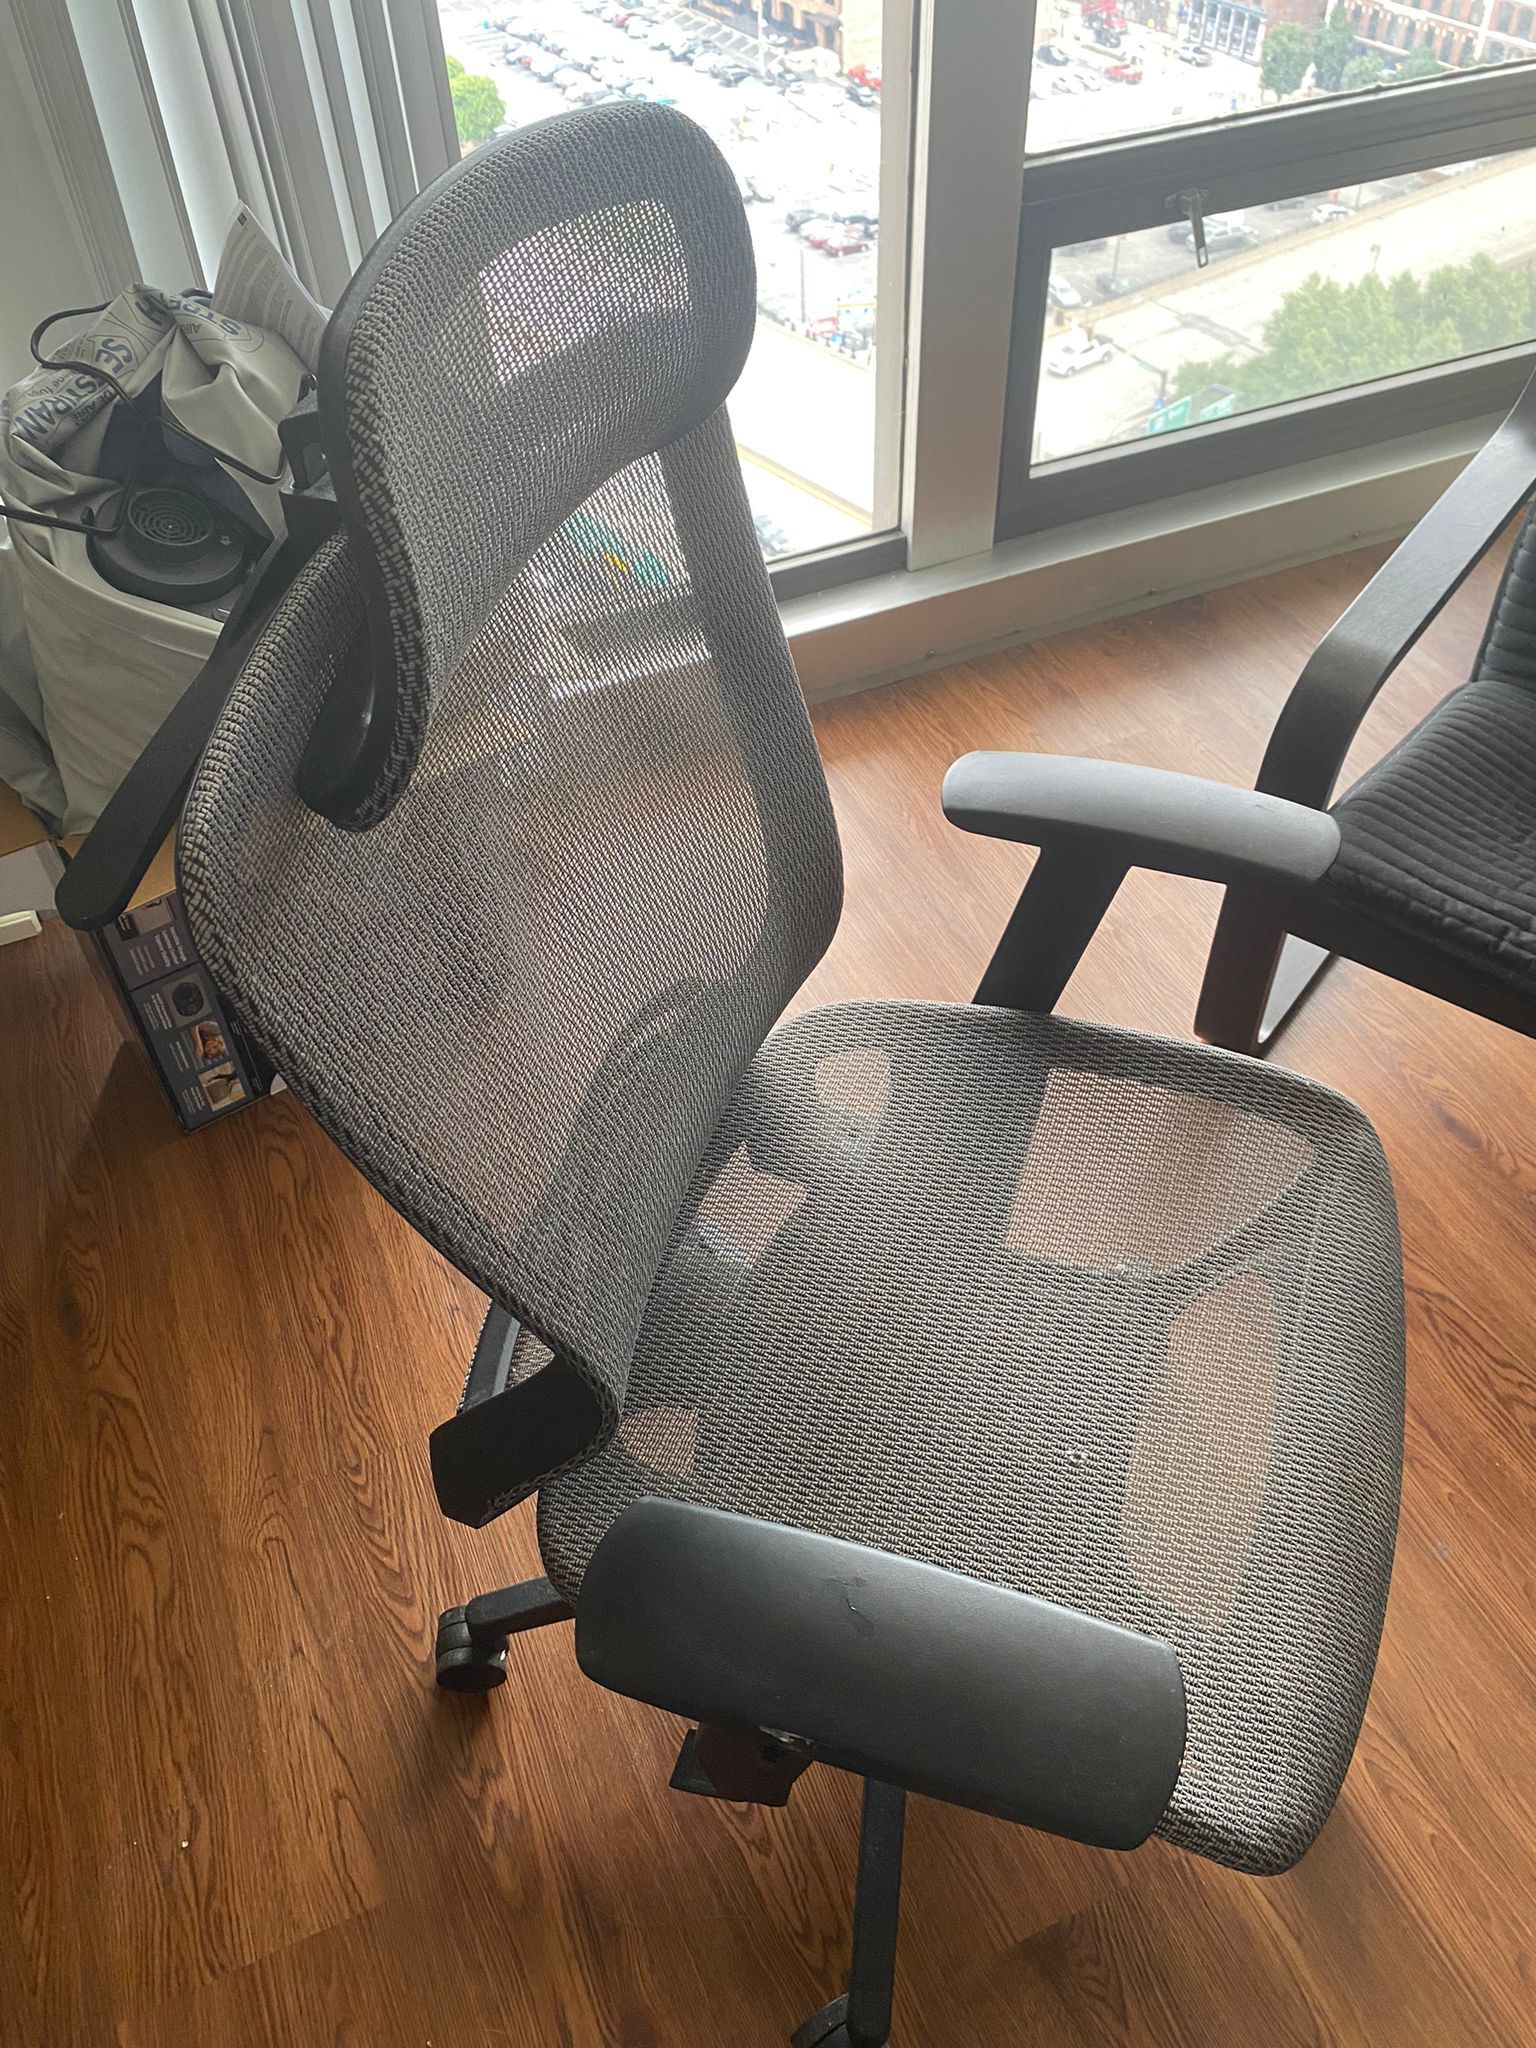 Office Desk Chair Ergonomic